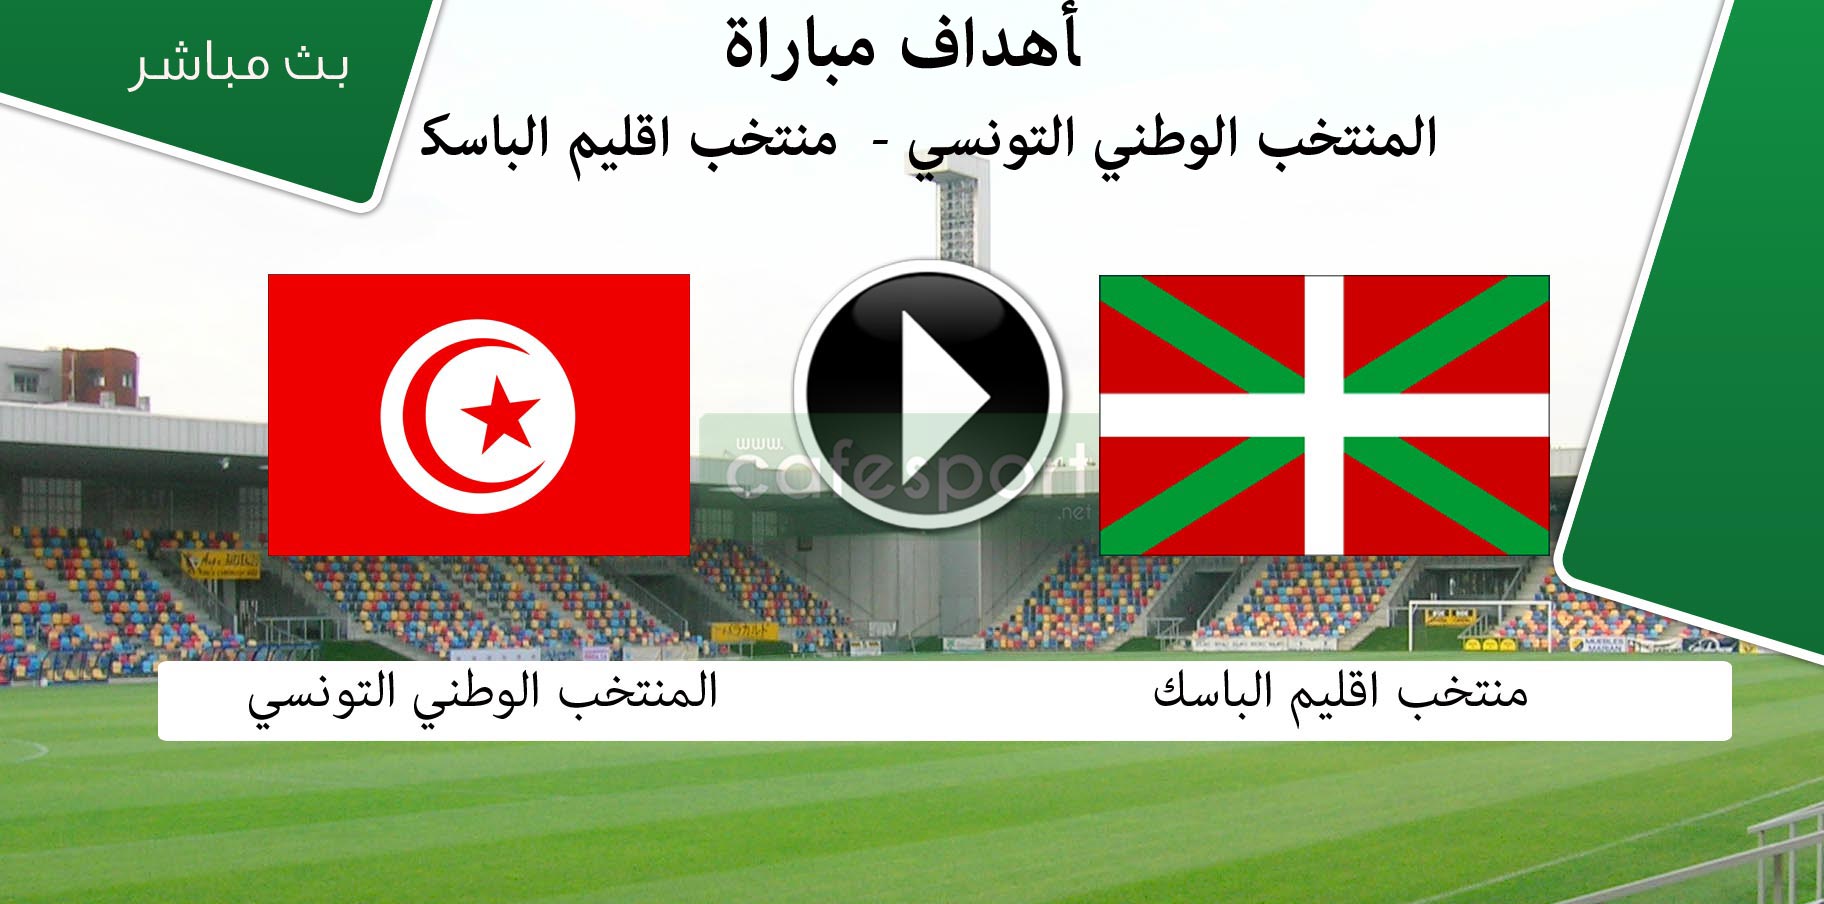 المنتخب الوطني التونسي أمام نضيره منتخب اقليم الباسك